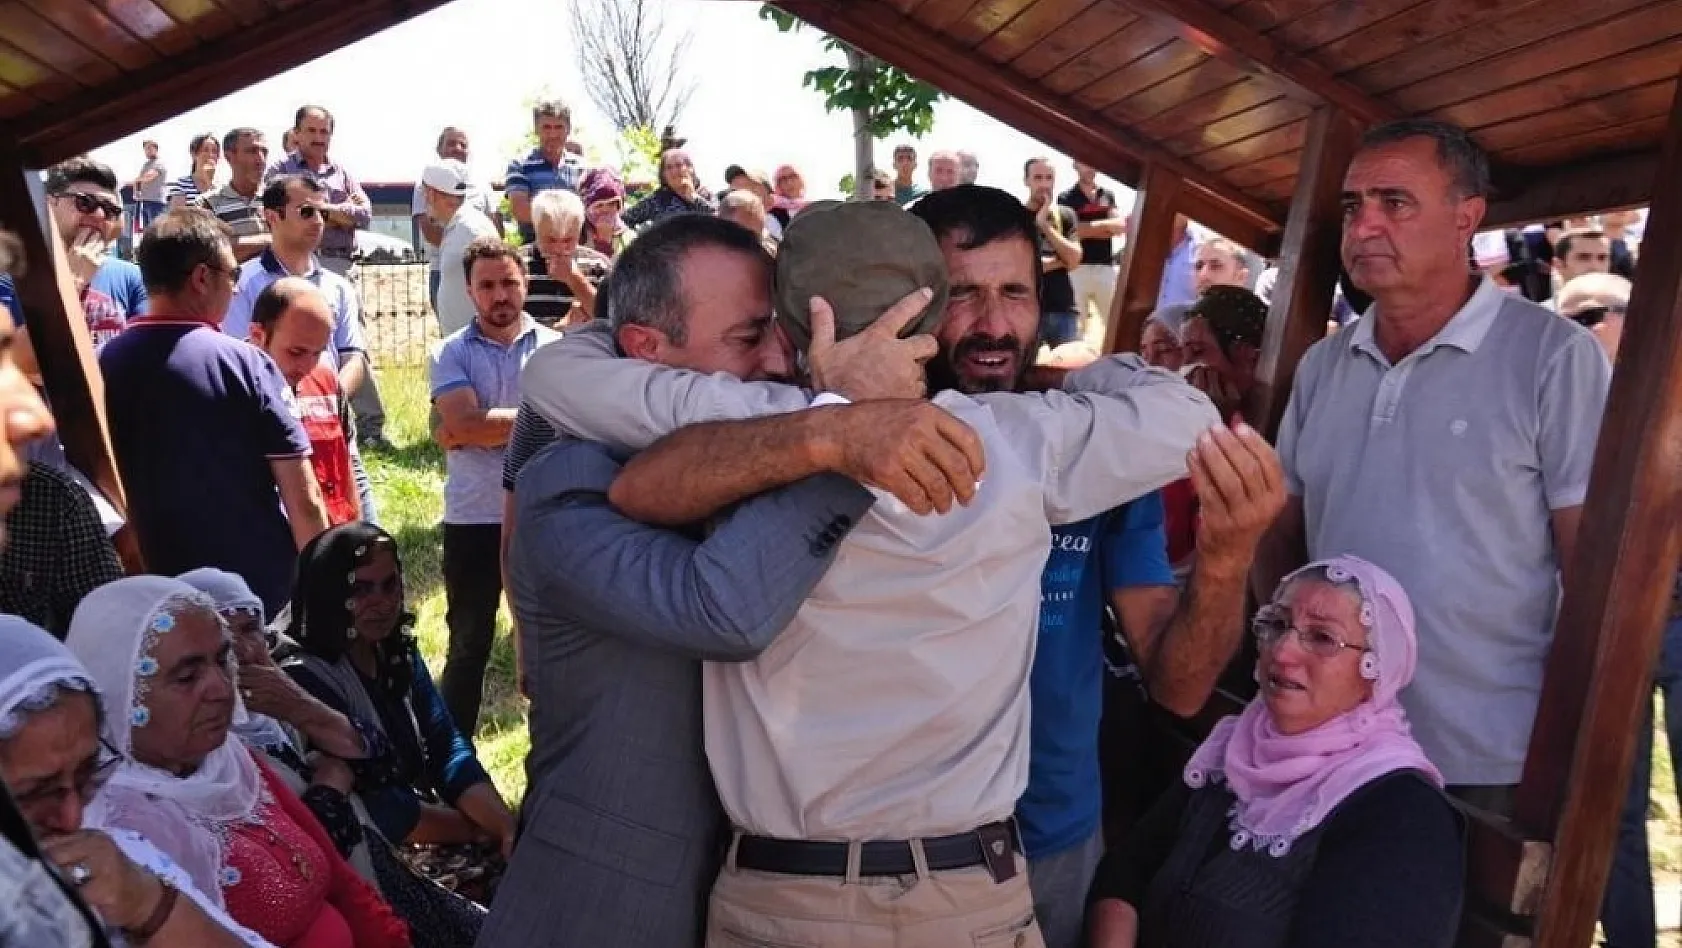 Valilik, terör kurbanı kardeşler ile Engin Eroğlu'nun aileleri için yardım kampanyası başlattı 